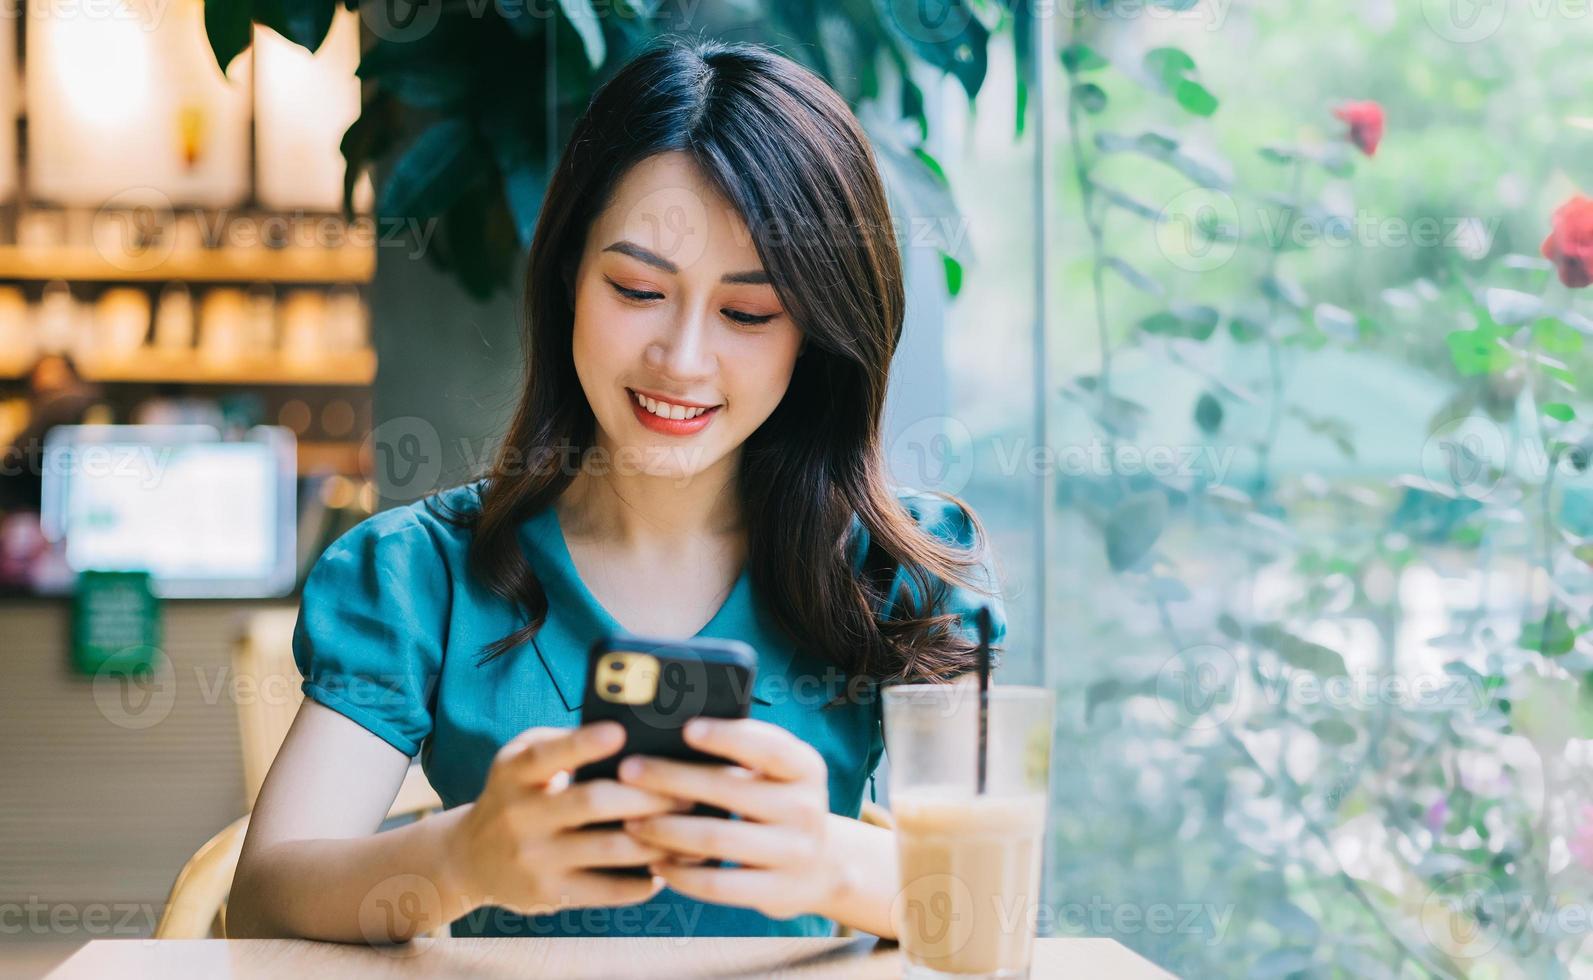 jovem mulher asiática sorrindo enquanto usa o smartphone foto